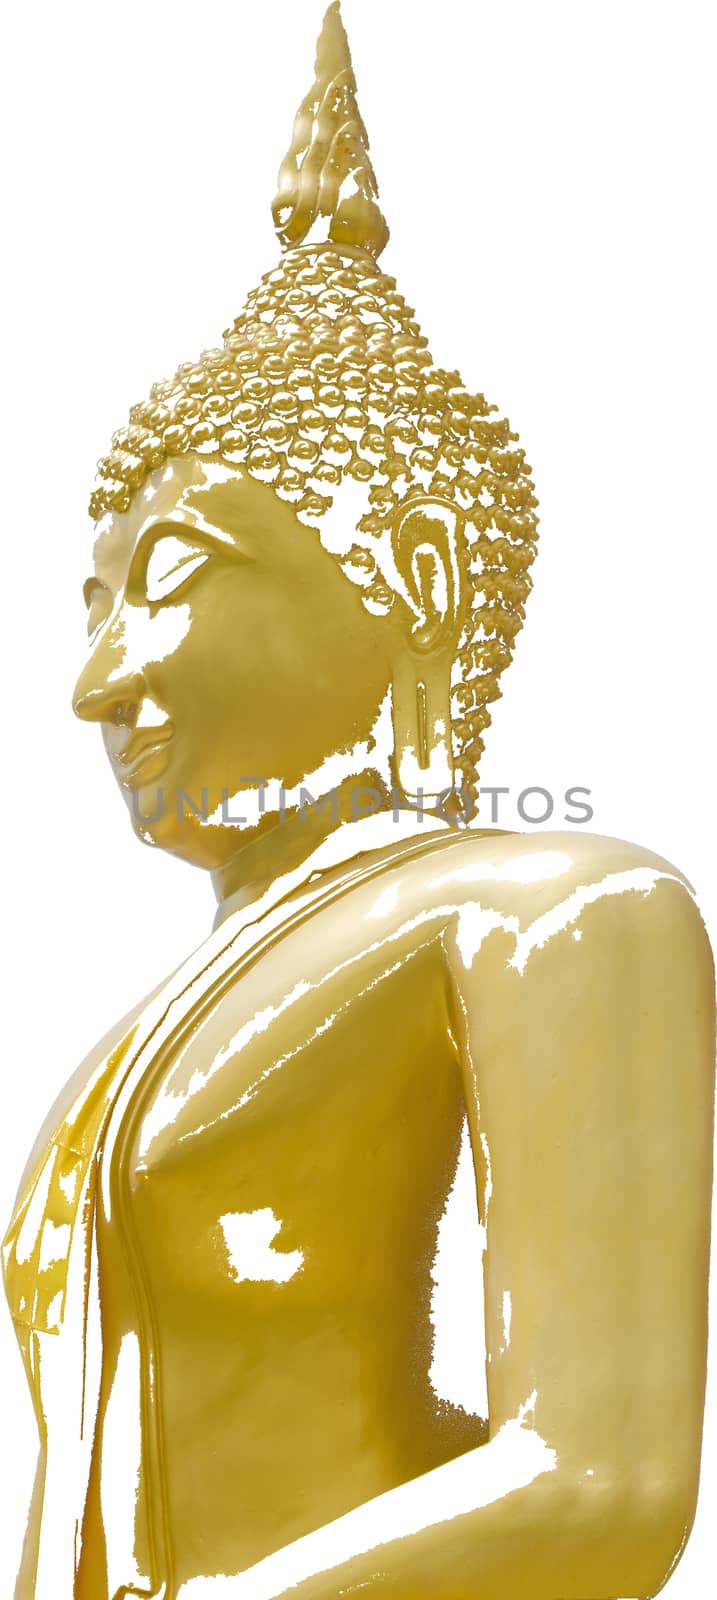 Seated Buddha Image by kobfujar